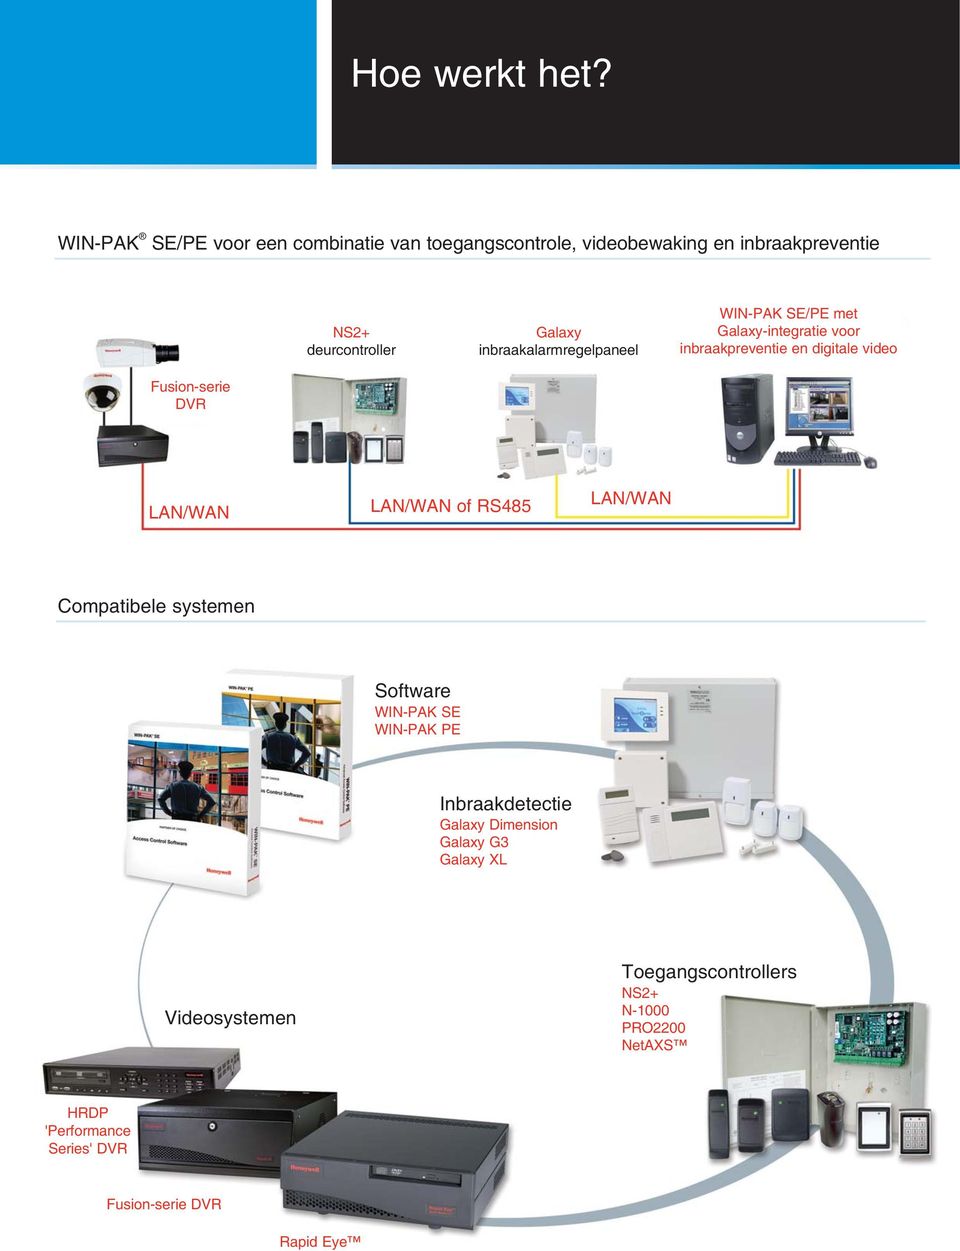 inbraakalarmregelpaneel WIN-PAK SE/PE met Galaxy-integratie voor inbraakpreventie en digitale video Fusion-serie DVR LAN/WAN